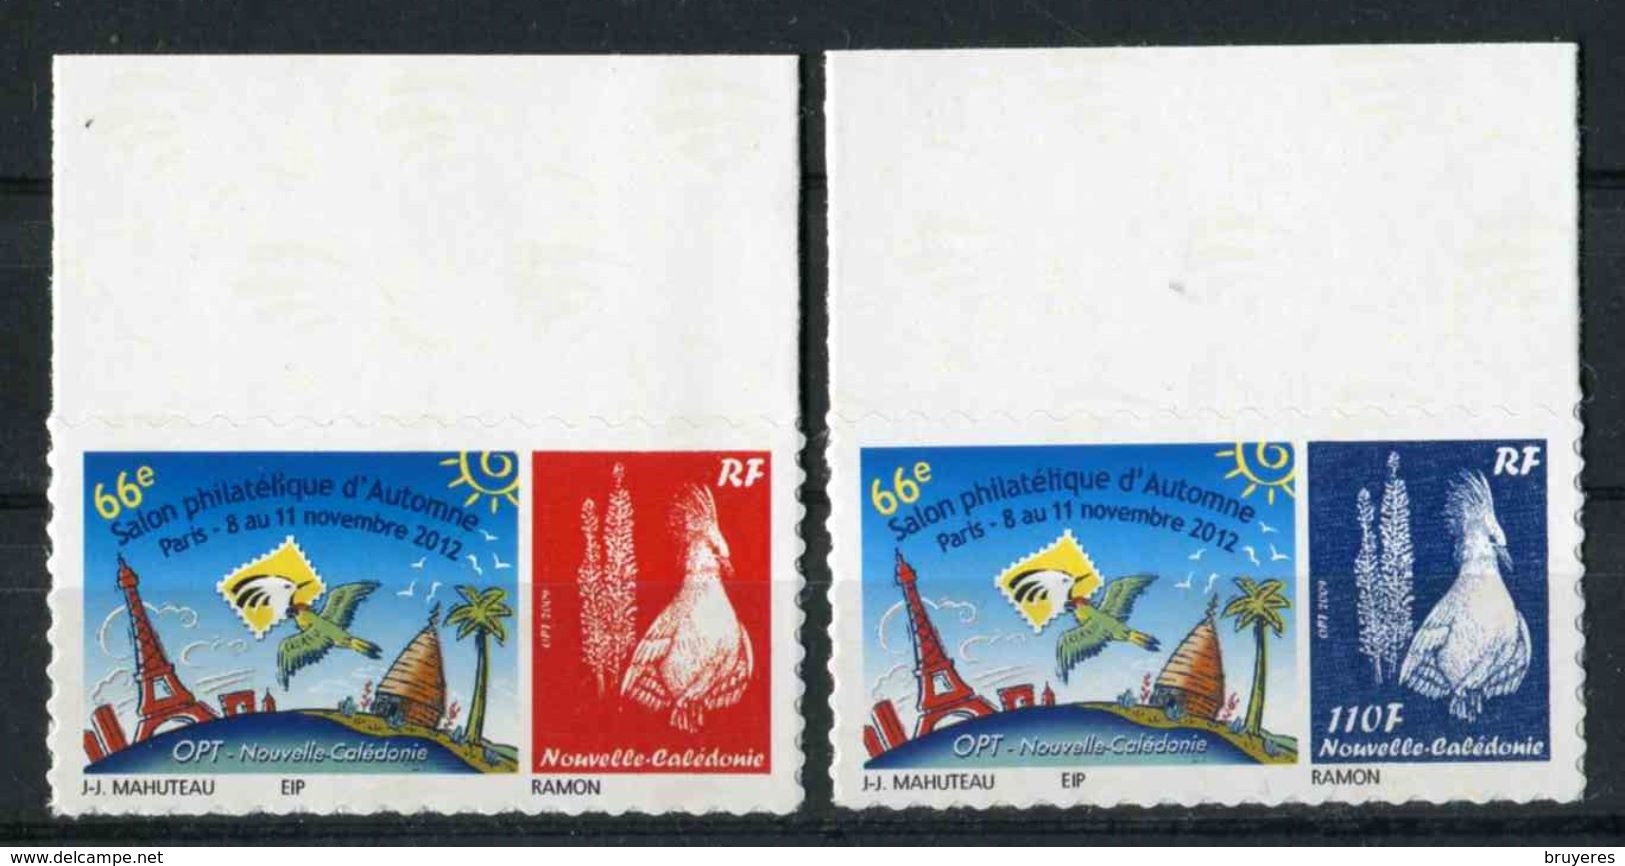 Timbres** De 2012 Autocollants En Bord De Feuille "66e Salon Philatélique D'Automne - Paris " - Unused Stamps